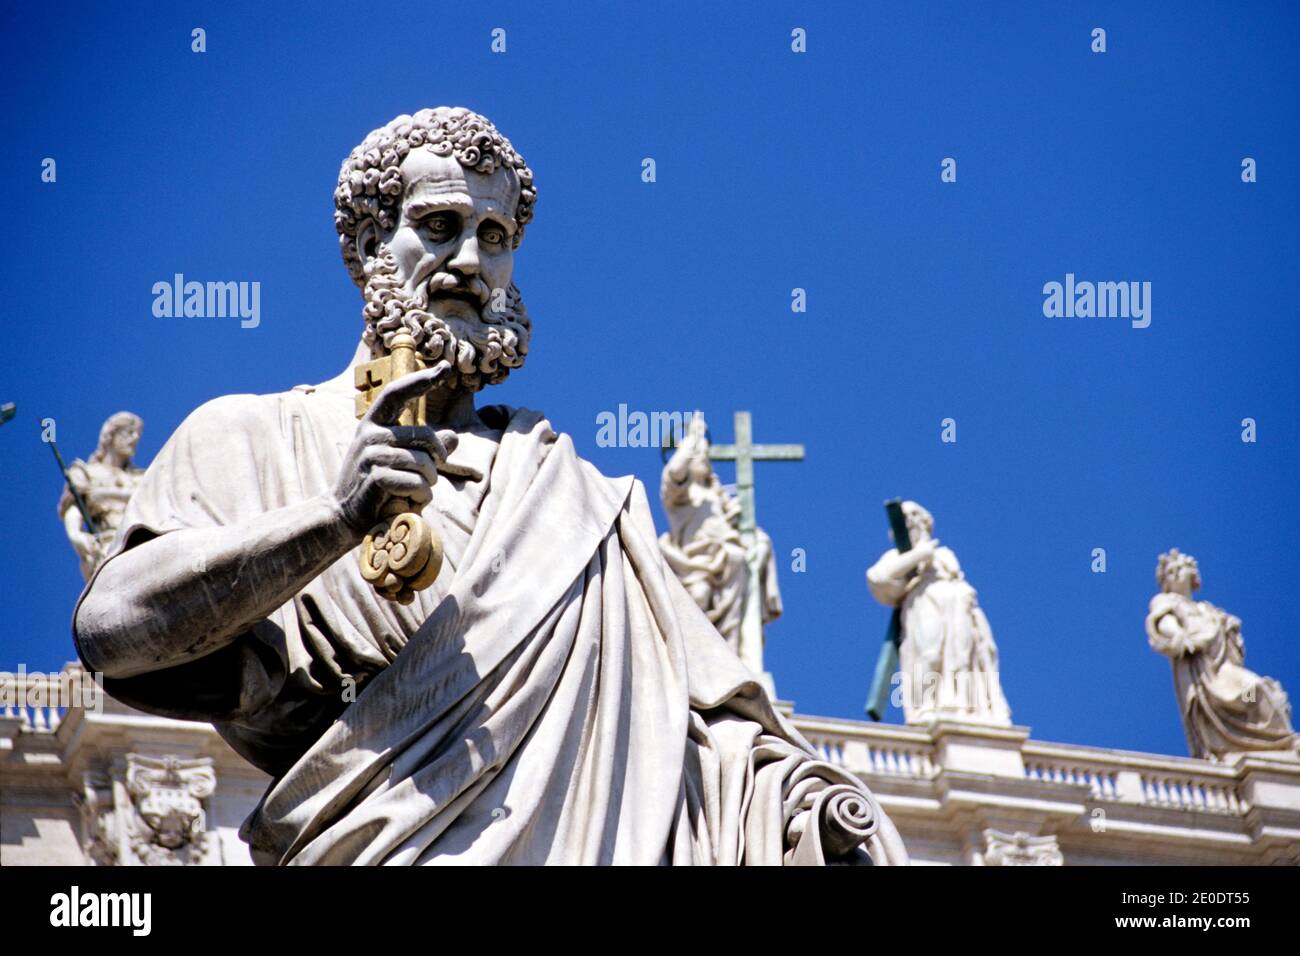 Statue de Saint-Pierre (avec les clés de l'église en main) sur la place Saint-Pierre, la basilique Saint-Pierre, le Vatican, Rome, Italie. Banque D'Images